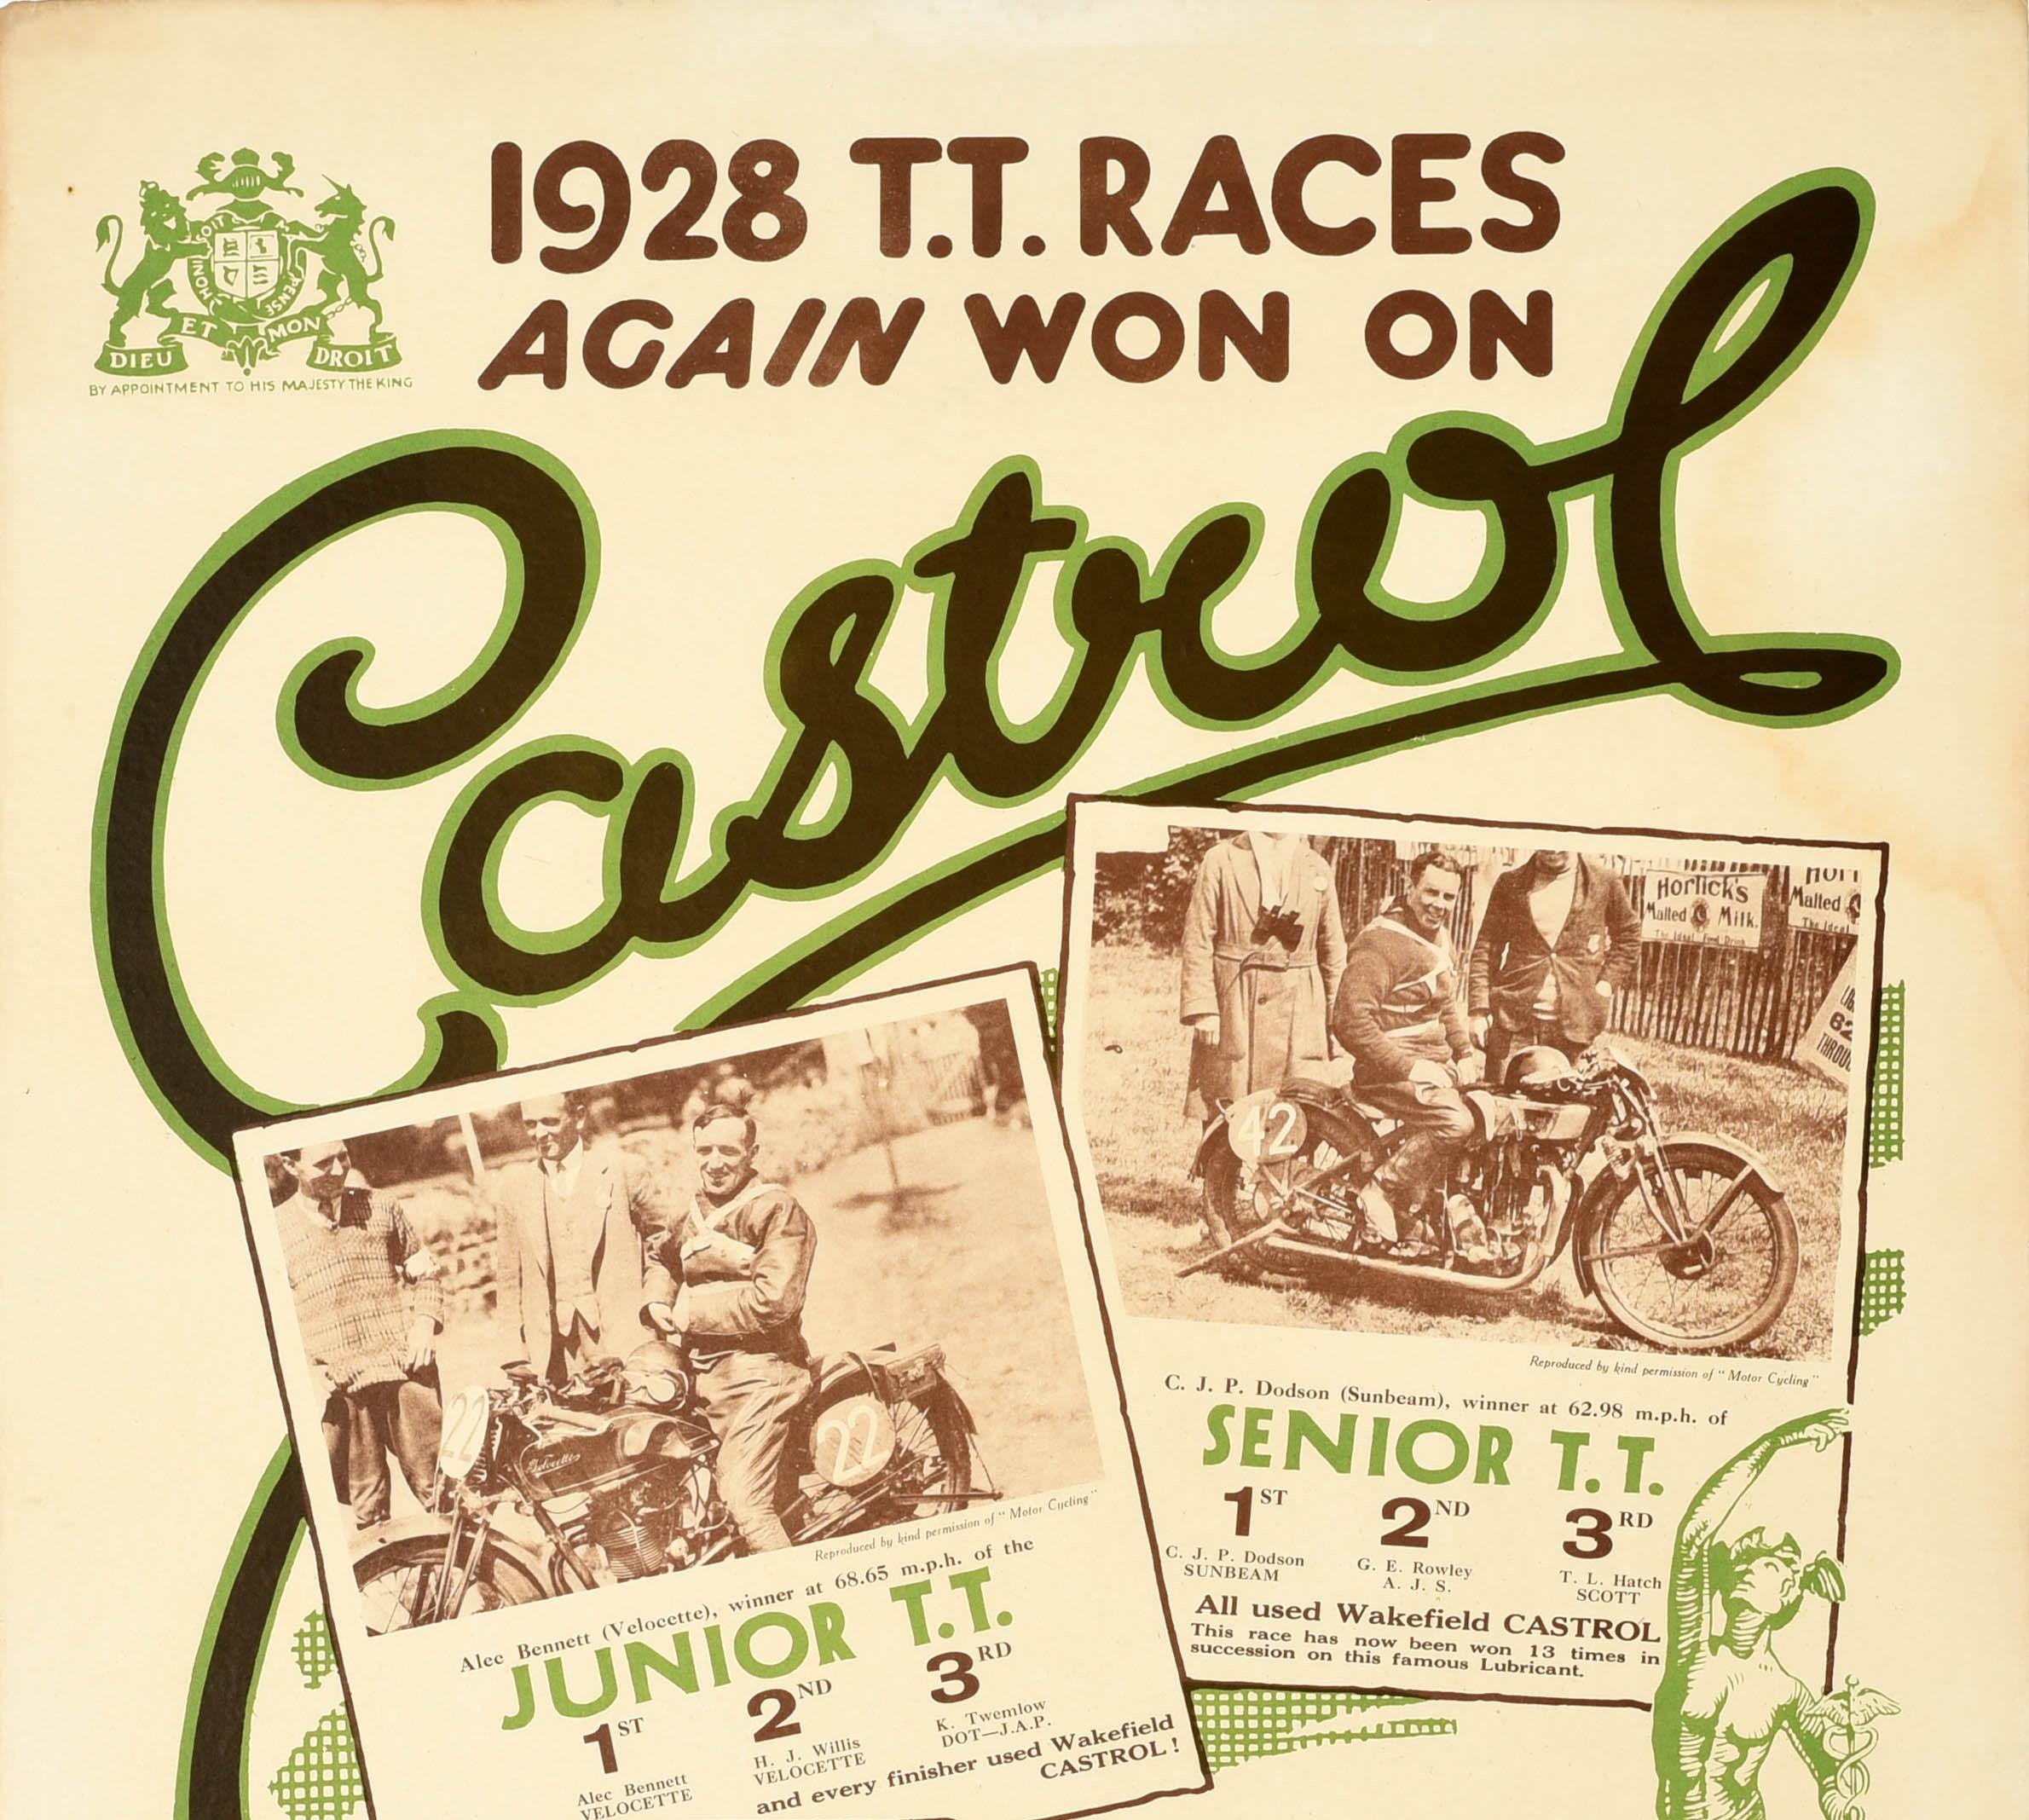 Affiche publicitaire originale de sport automobile pour Castrol Motor Oil - 1928 T.T. Les courses sont à nouveau remportées avec de l'essence Castrol - avec le titre en caractères gras et stylisés au-dessus, la lettre L derrière les photos et la